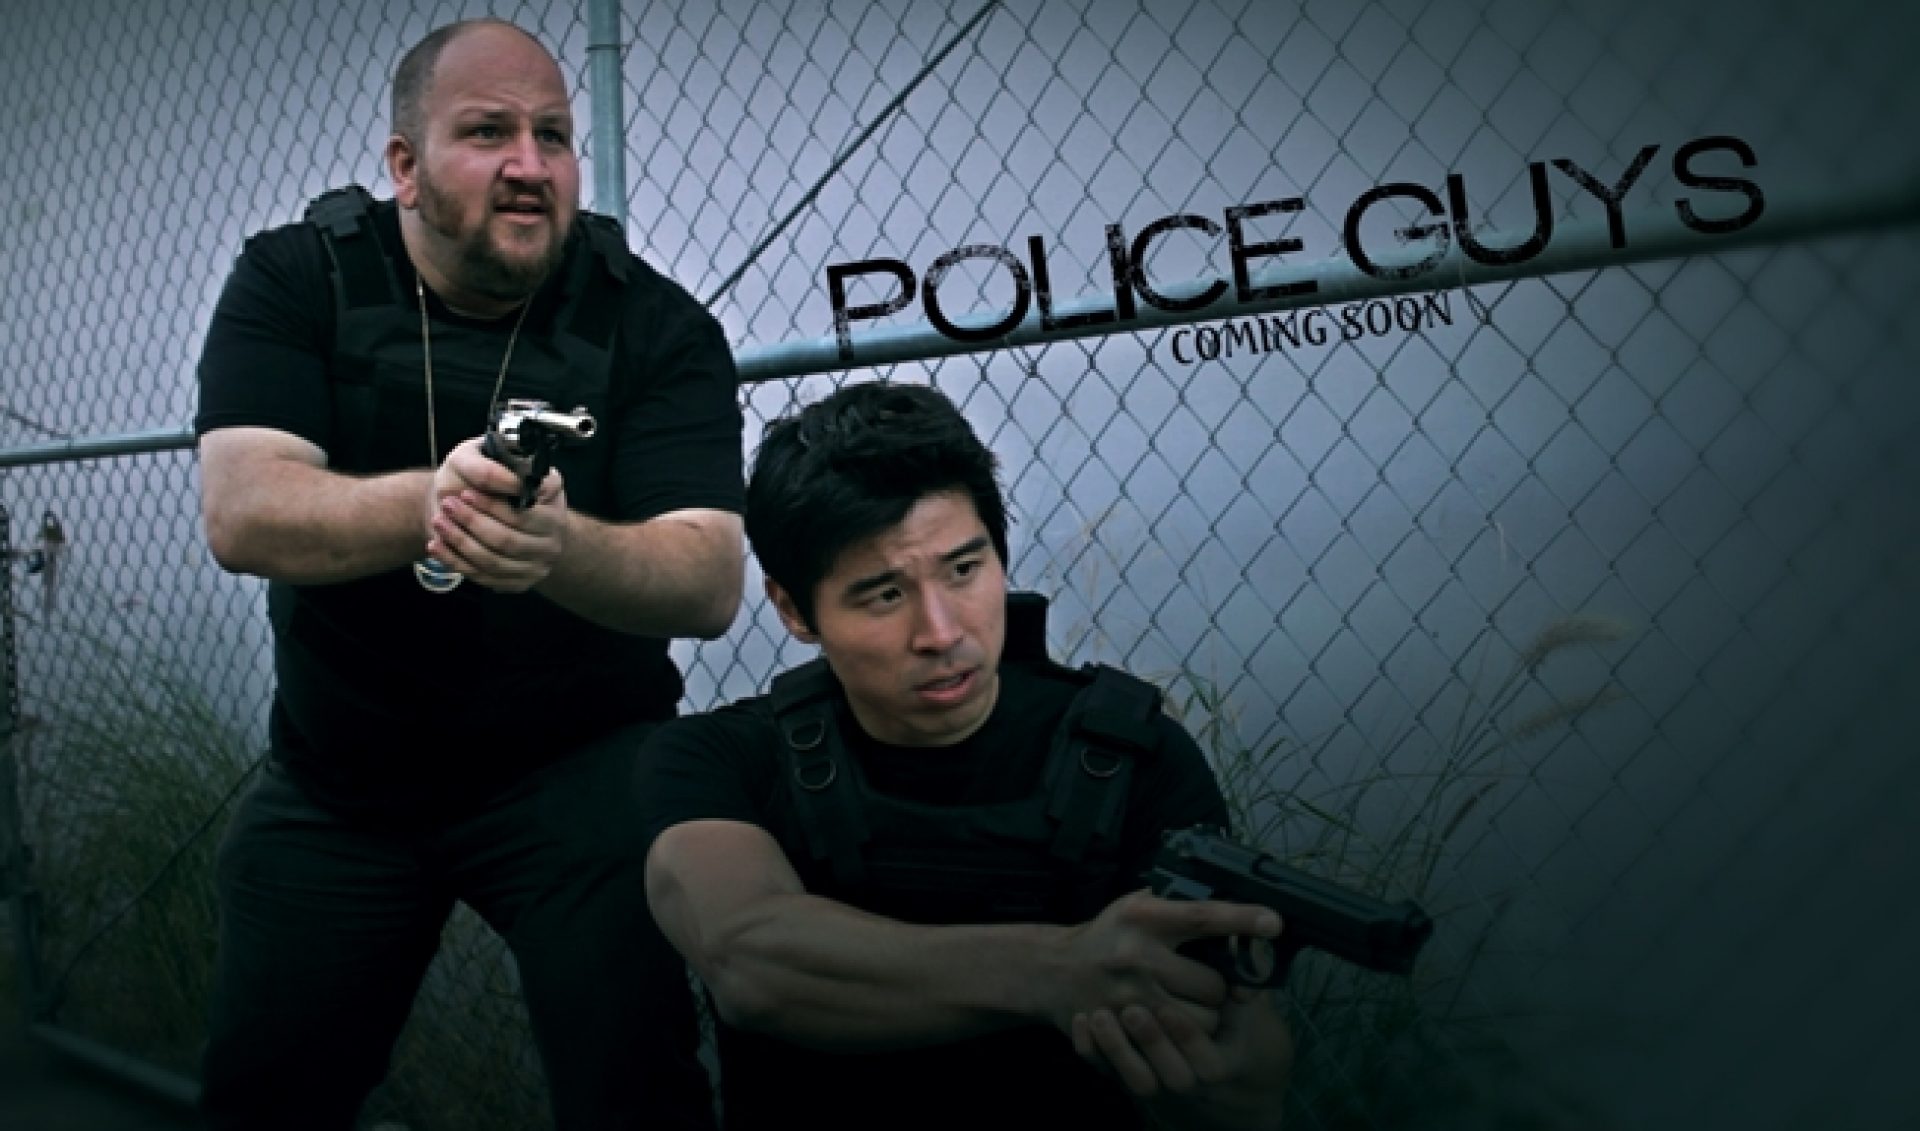 ‘Police Guys’ Seeks Niche As Wacky Cop Show Parody